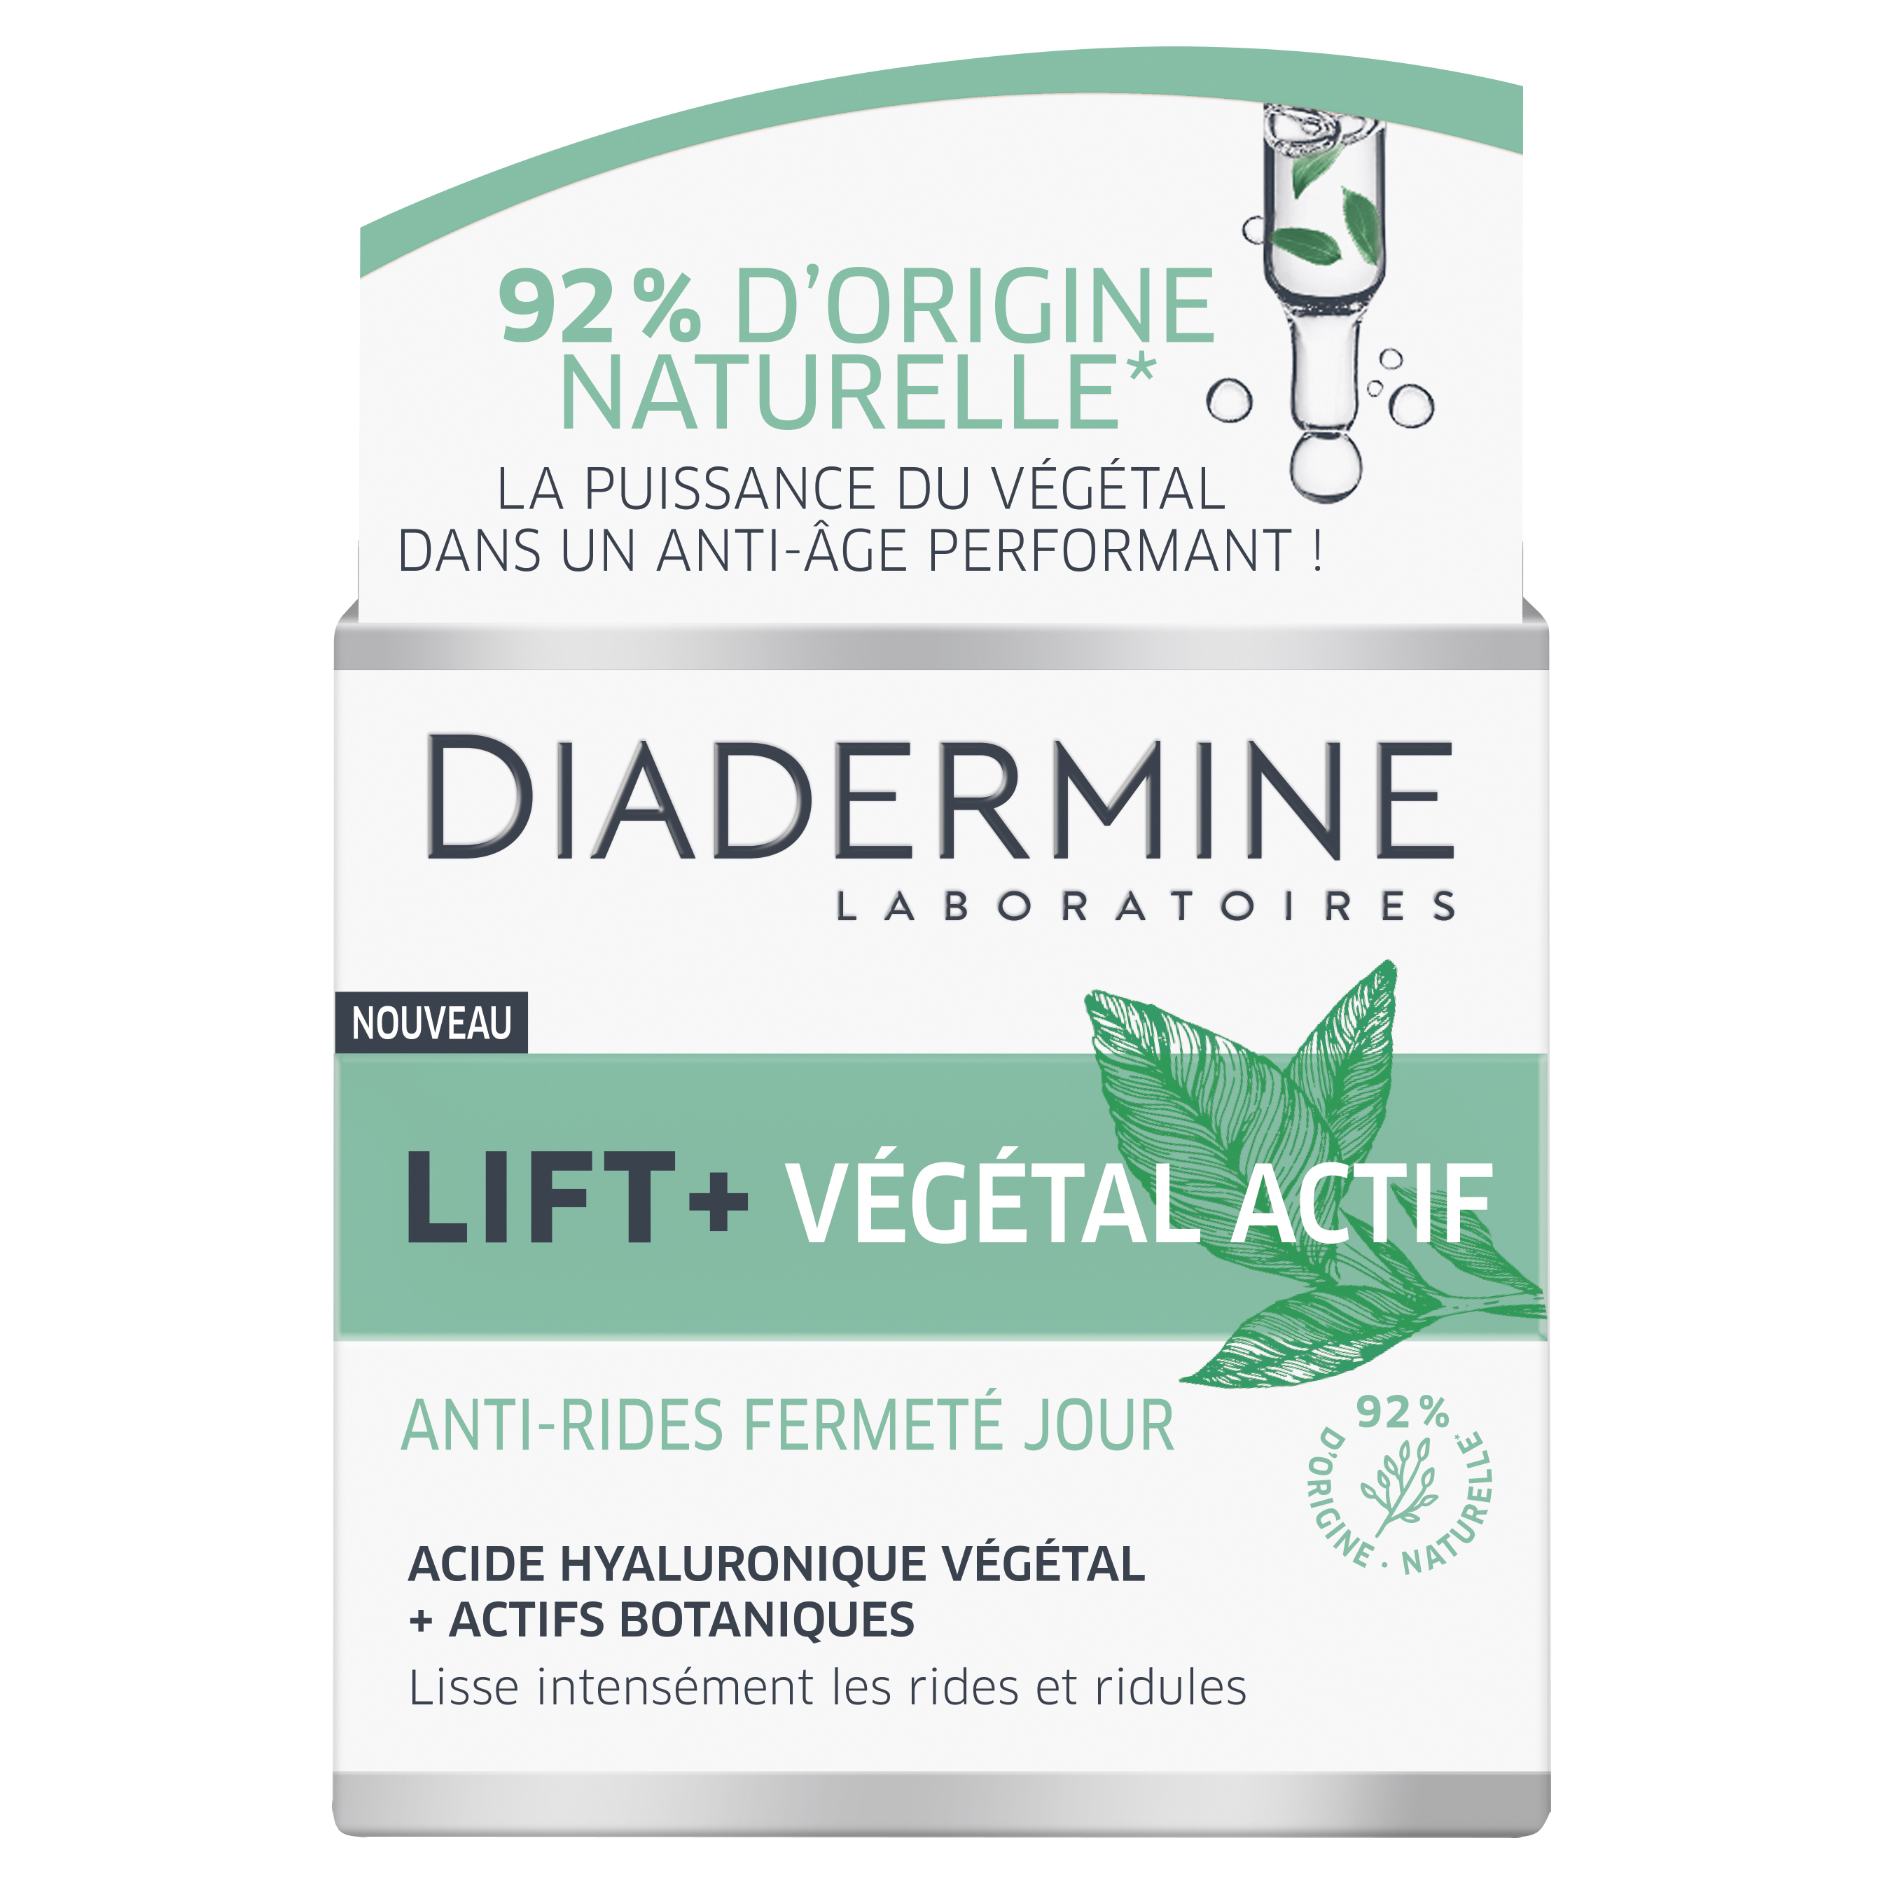 Lift + Végétal Actif Anti-rides Fermeté Jour, Diadermine - Avis et